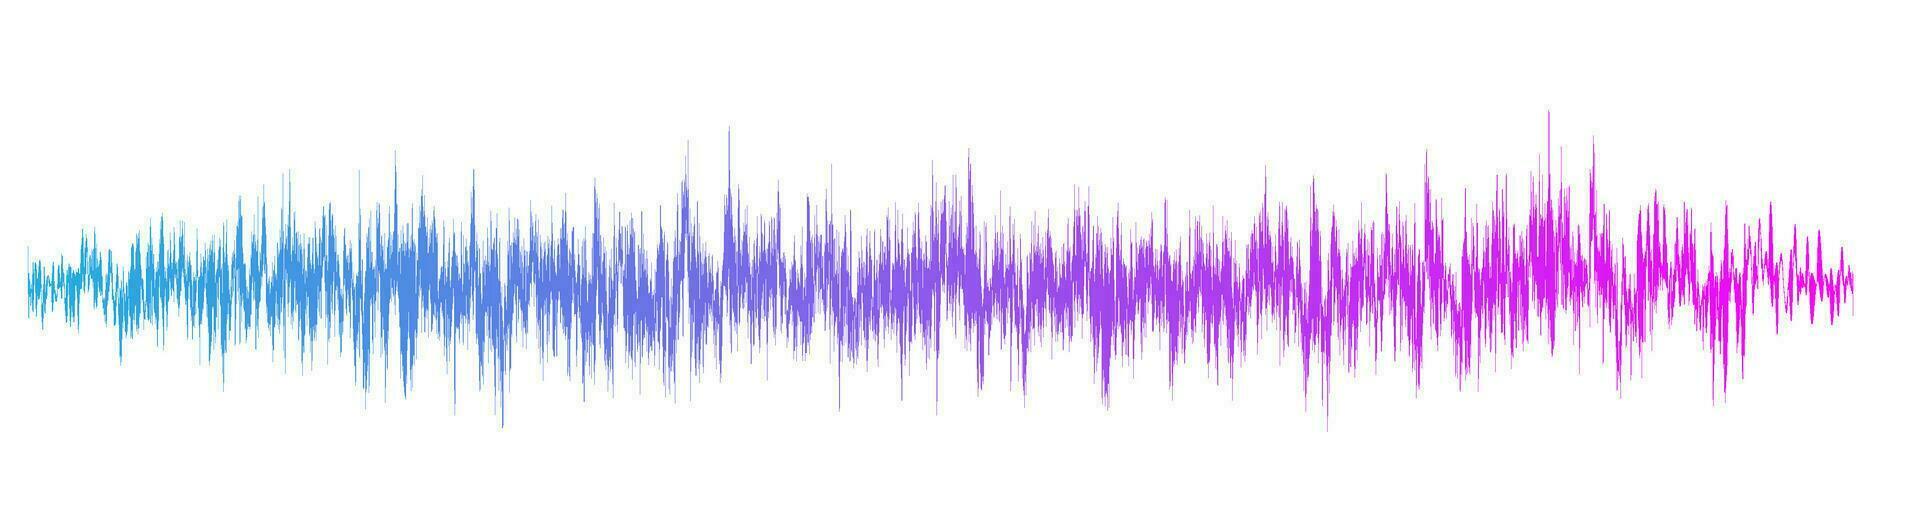 Modern equalizer of sound waves. Vector illustration. Ingredients sound wave